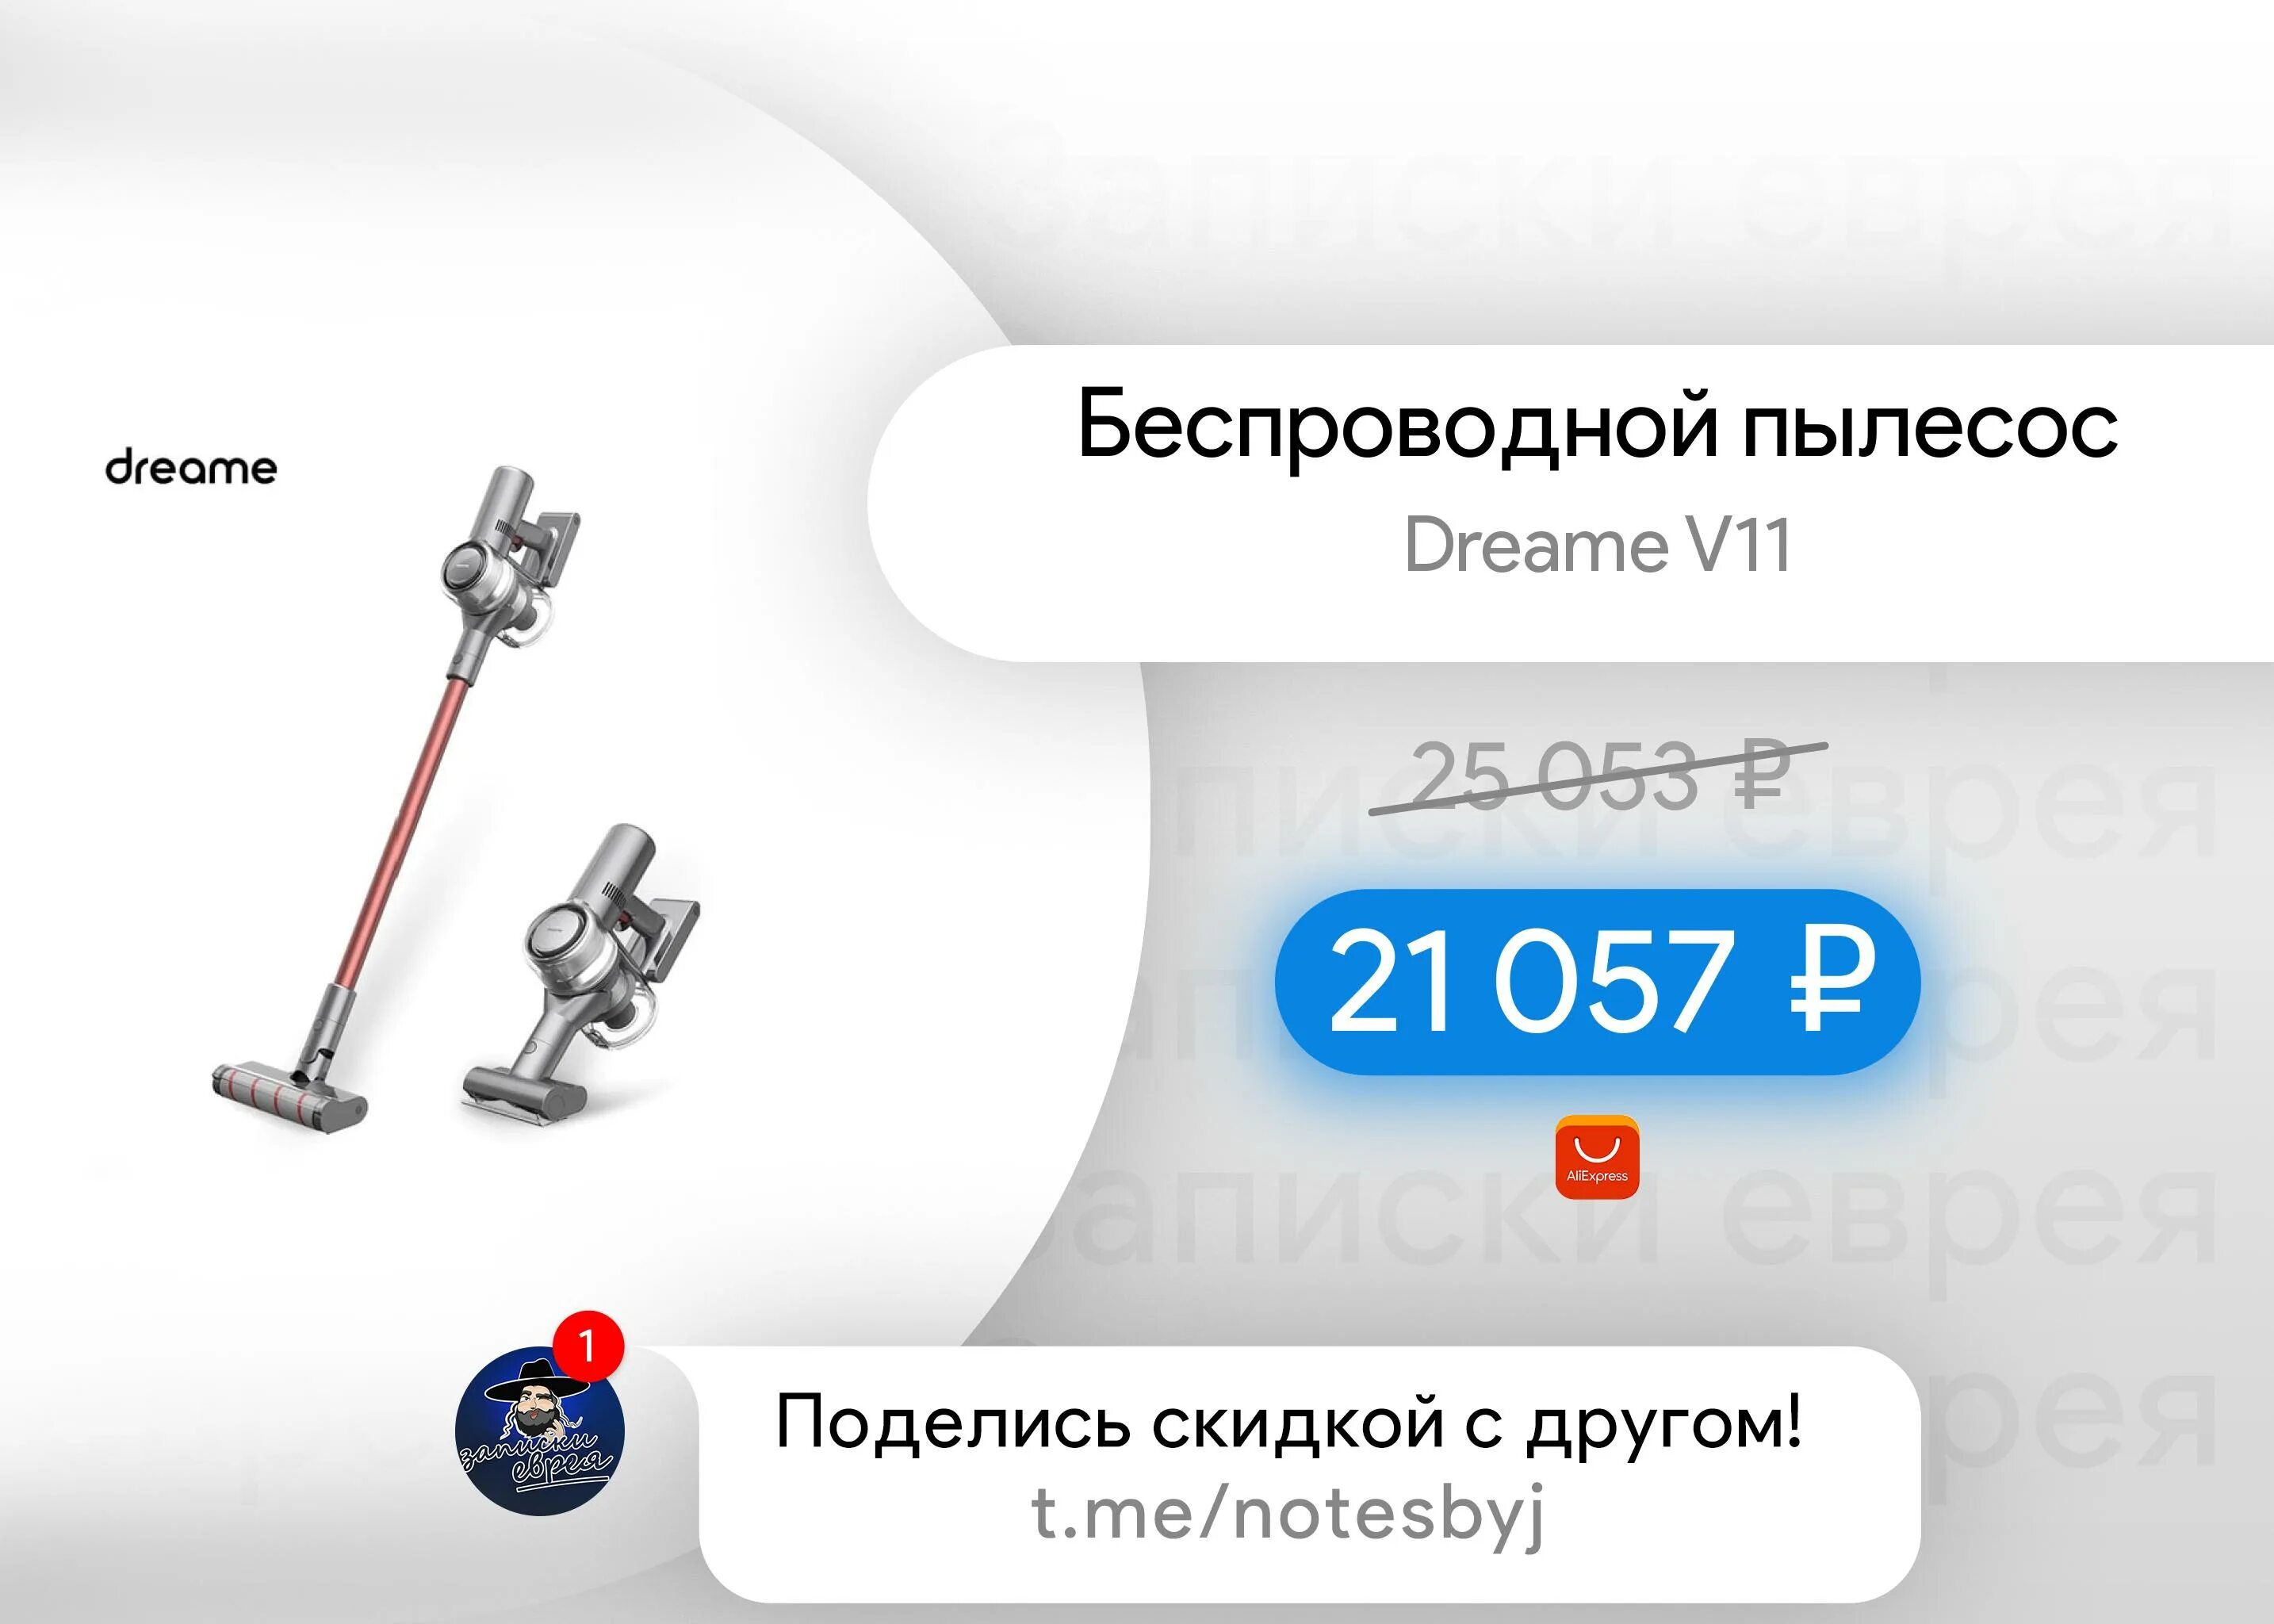 Dreame h13 pro. Dreame v11. Пылесос Dreame v11. Dreame v11 Pro. Dreame v11 комплект.